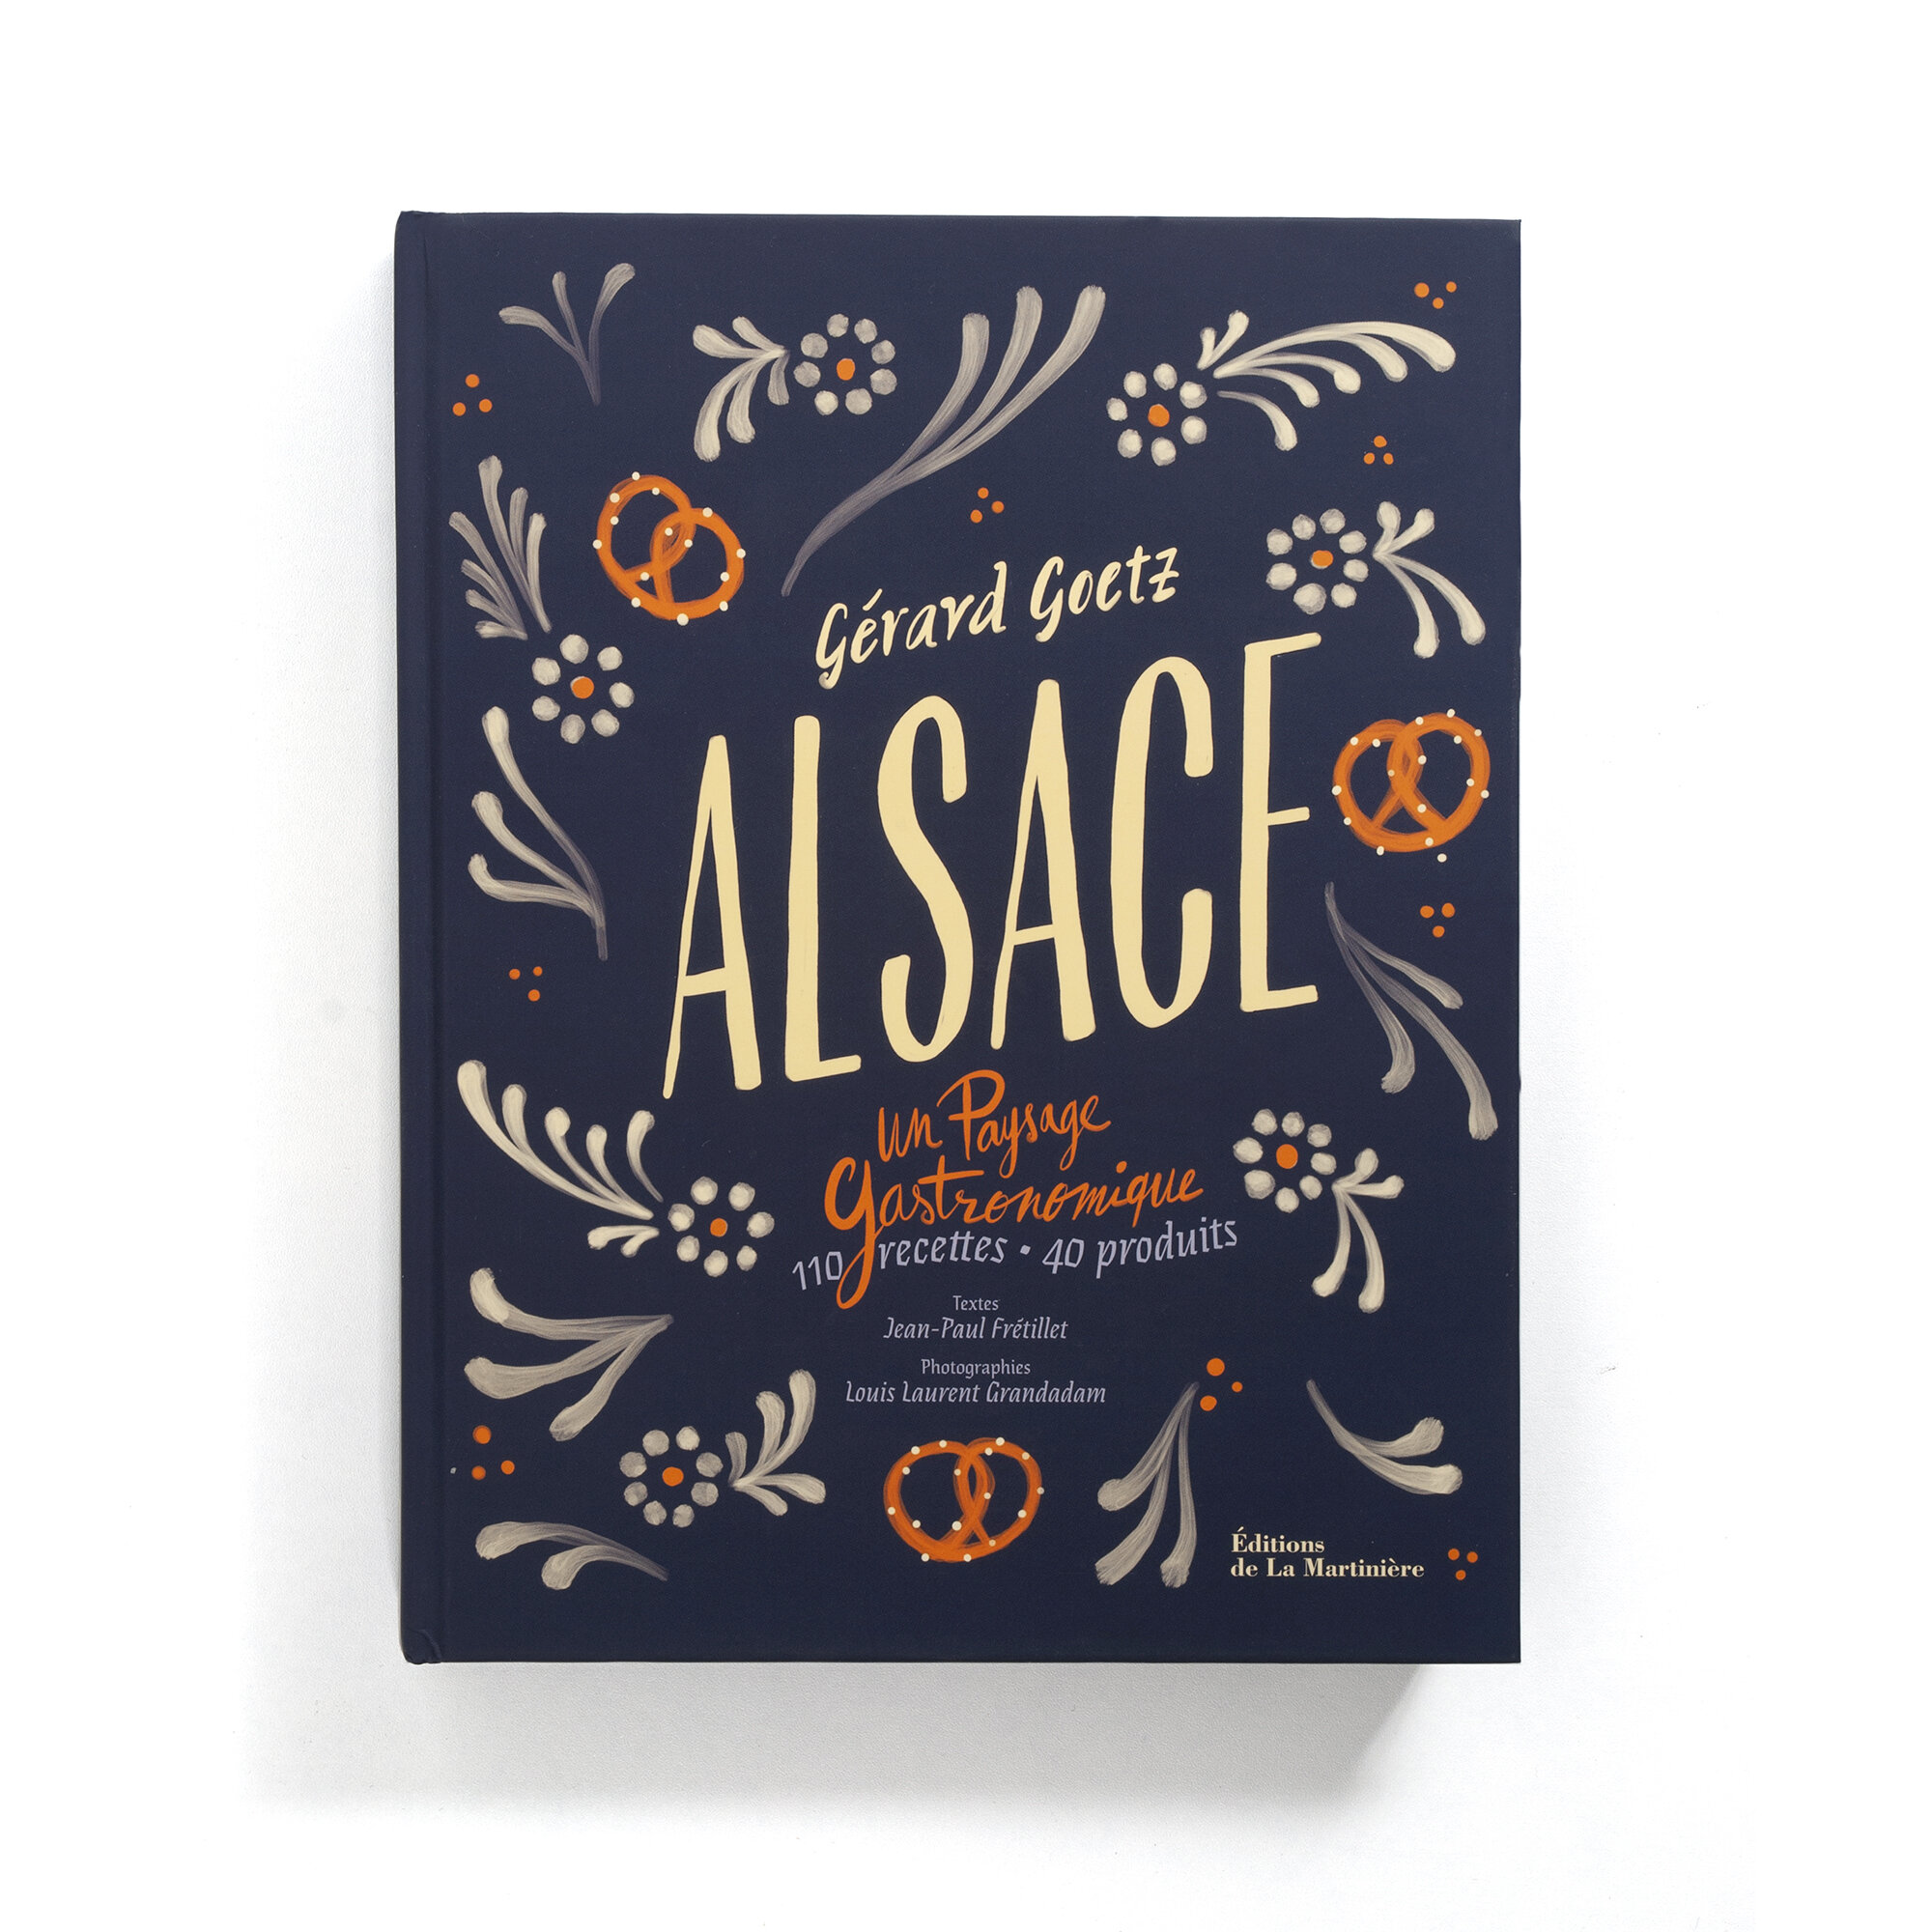   Alsace  Un paysage gastronomique  110 recettes, 40 produits  Gérard Goetz  Éditions de La Martinière  408 pages 